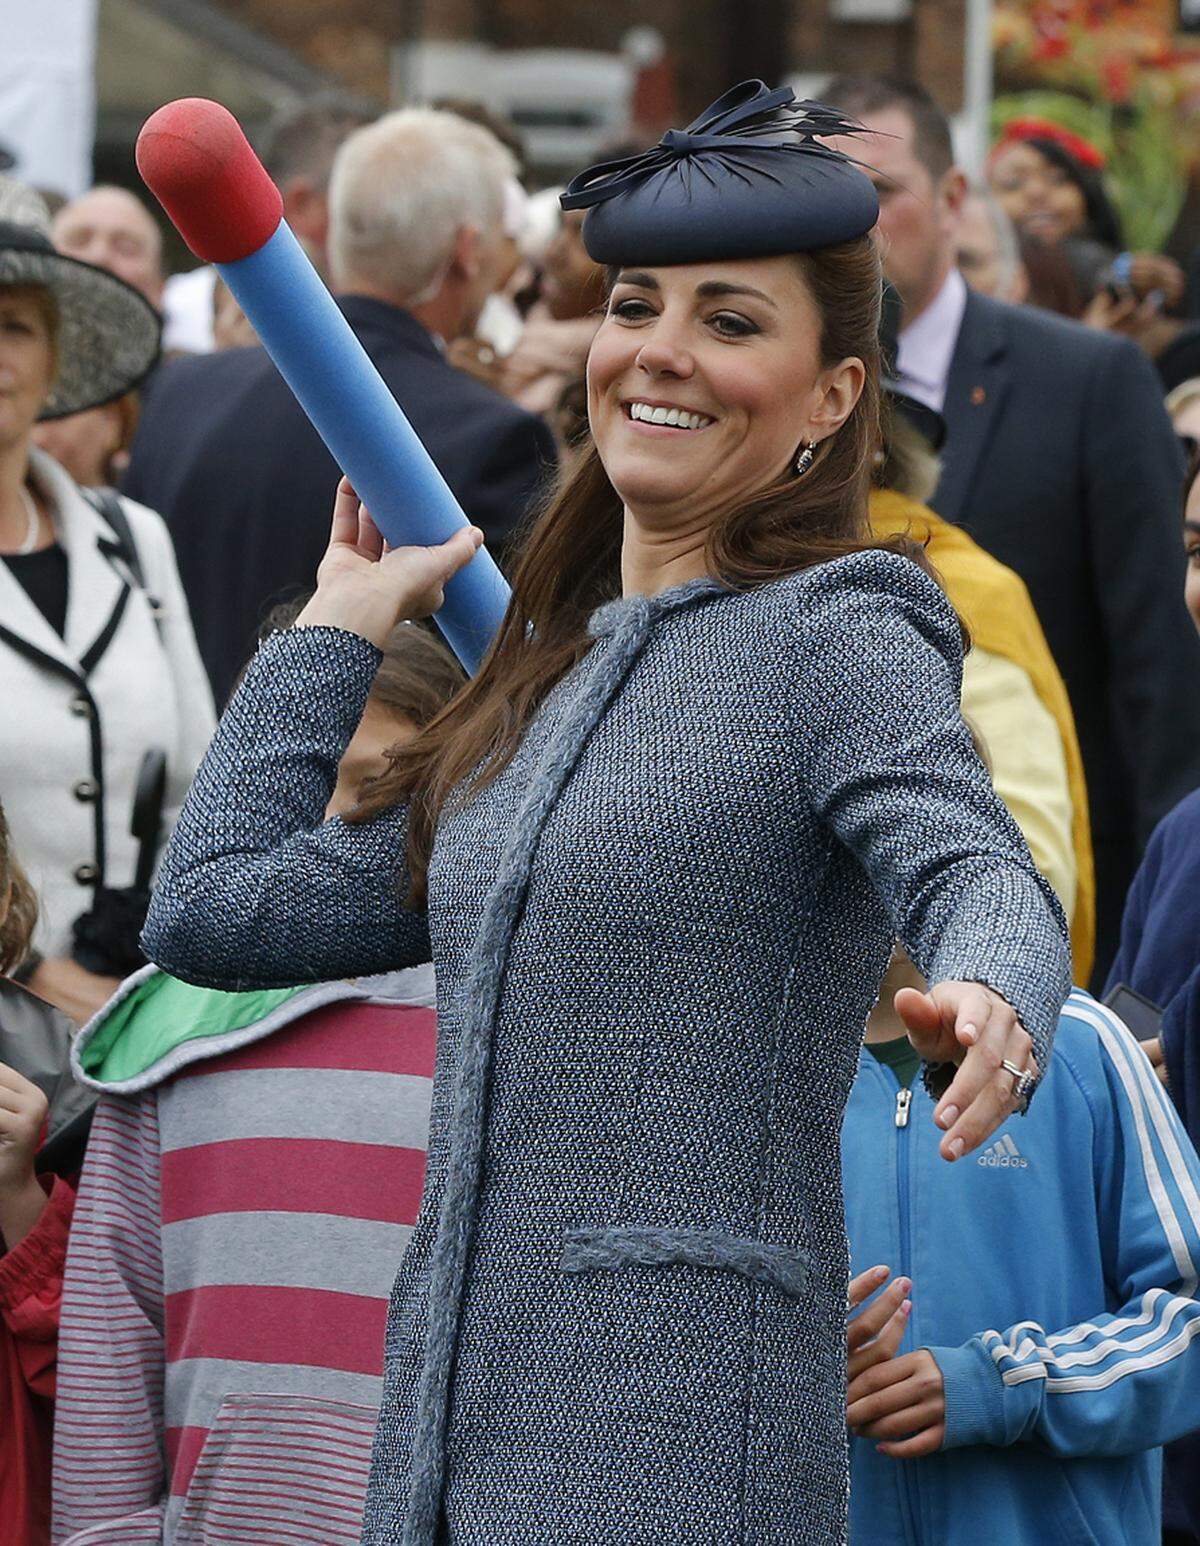 Sportlich aktiv musste sie im Laufe ihrer Ehe mit Prinz William bei öffentlichen Auftritten schon öfter werden, so wie hier bei einem Kindersportfest in Nottingham. Keine leichte Aufgabe in voller Montur inklusive Hut.